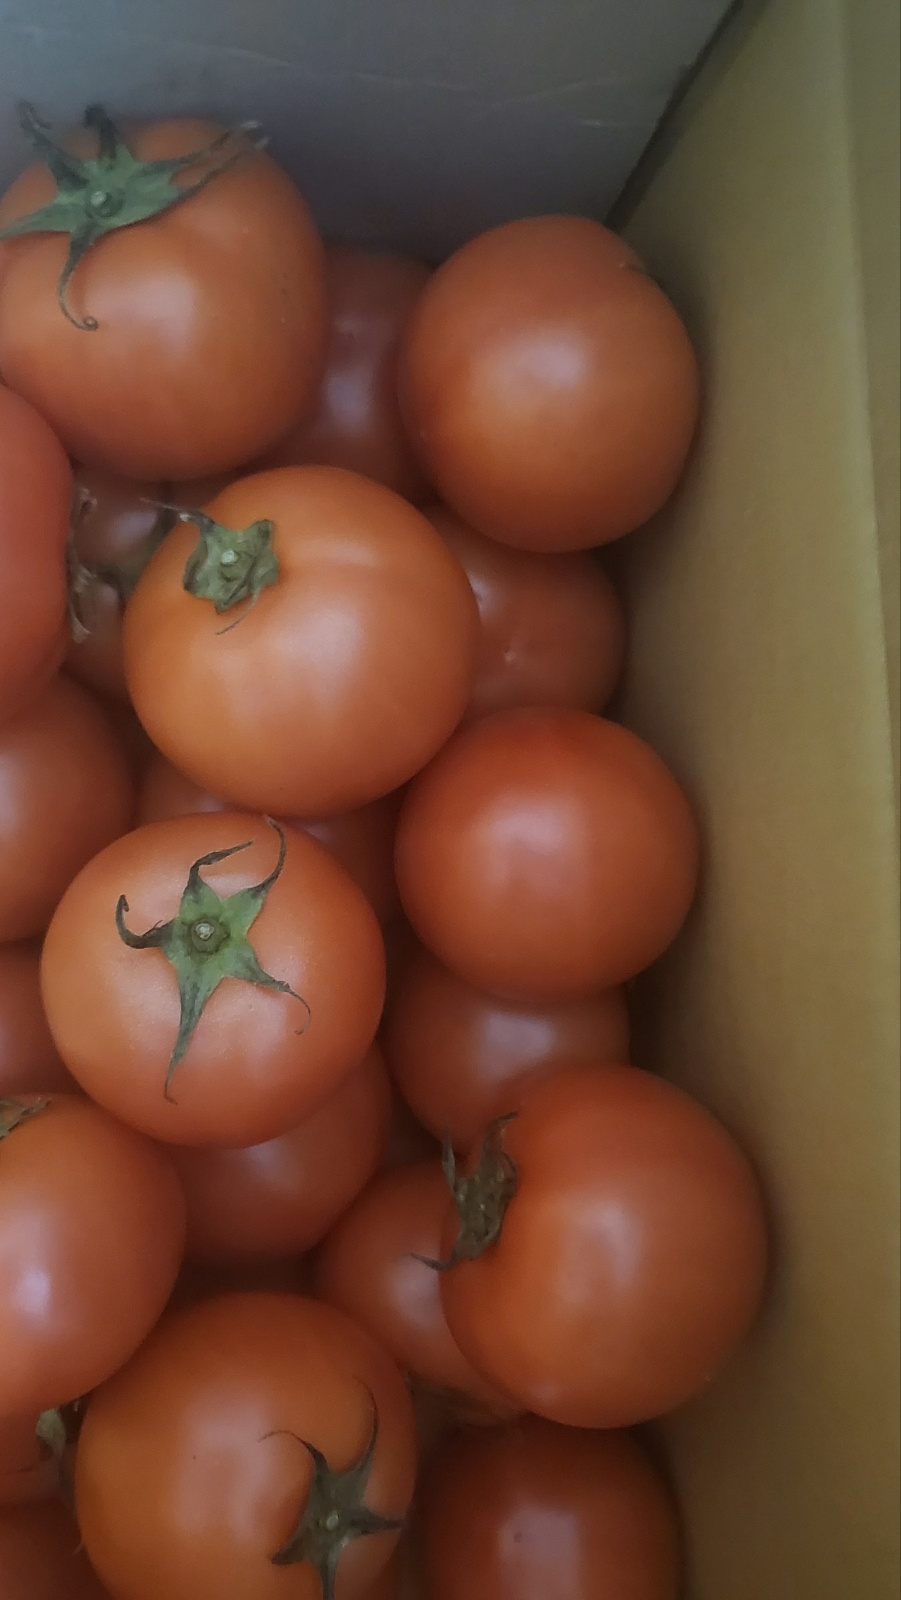 [정보화마을] 벌교부농정보화마을 완숙토마토 5kg